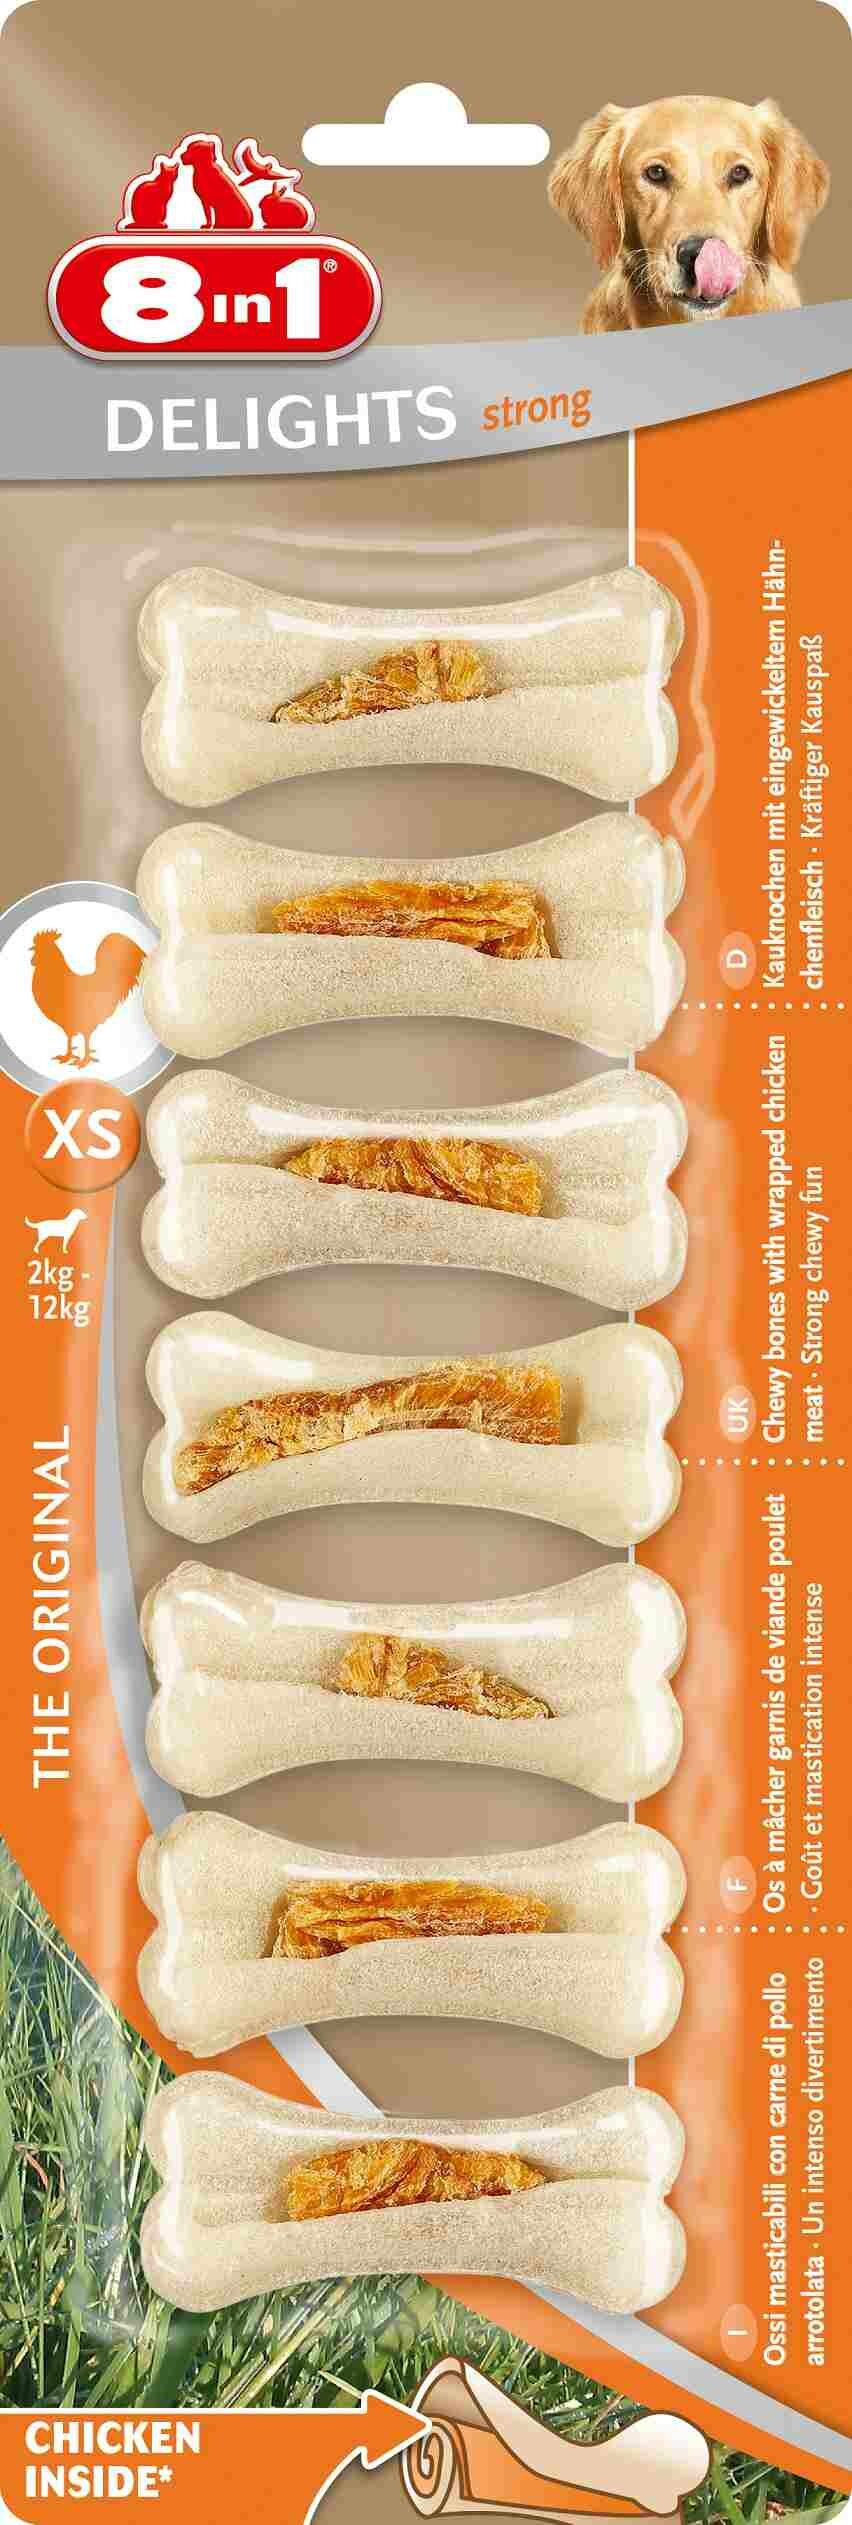 8in1 Delights Strong XS косточки сверхпрочные с куриным мясом для мелких собак (7*7,5 см.) Курица, 7 шт.